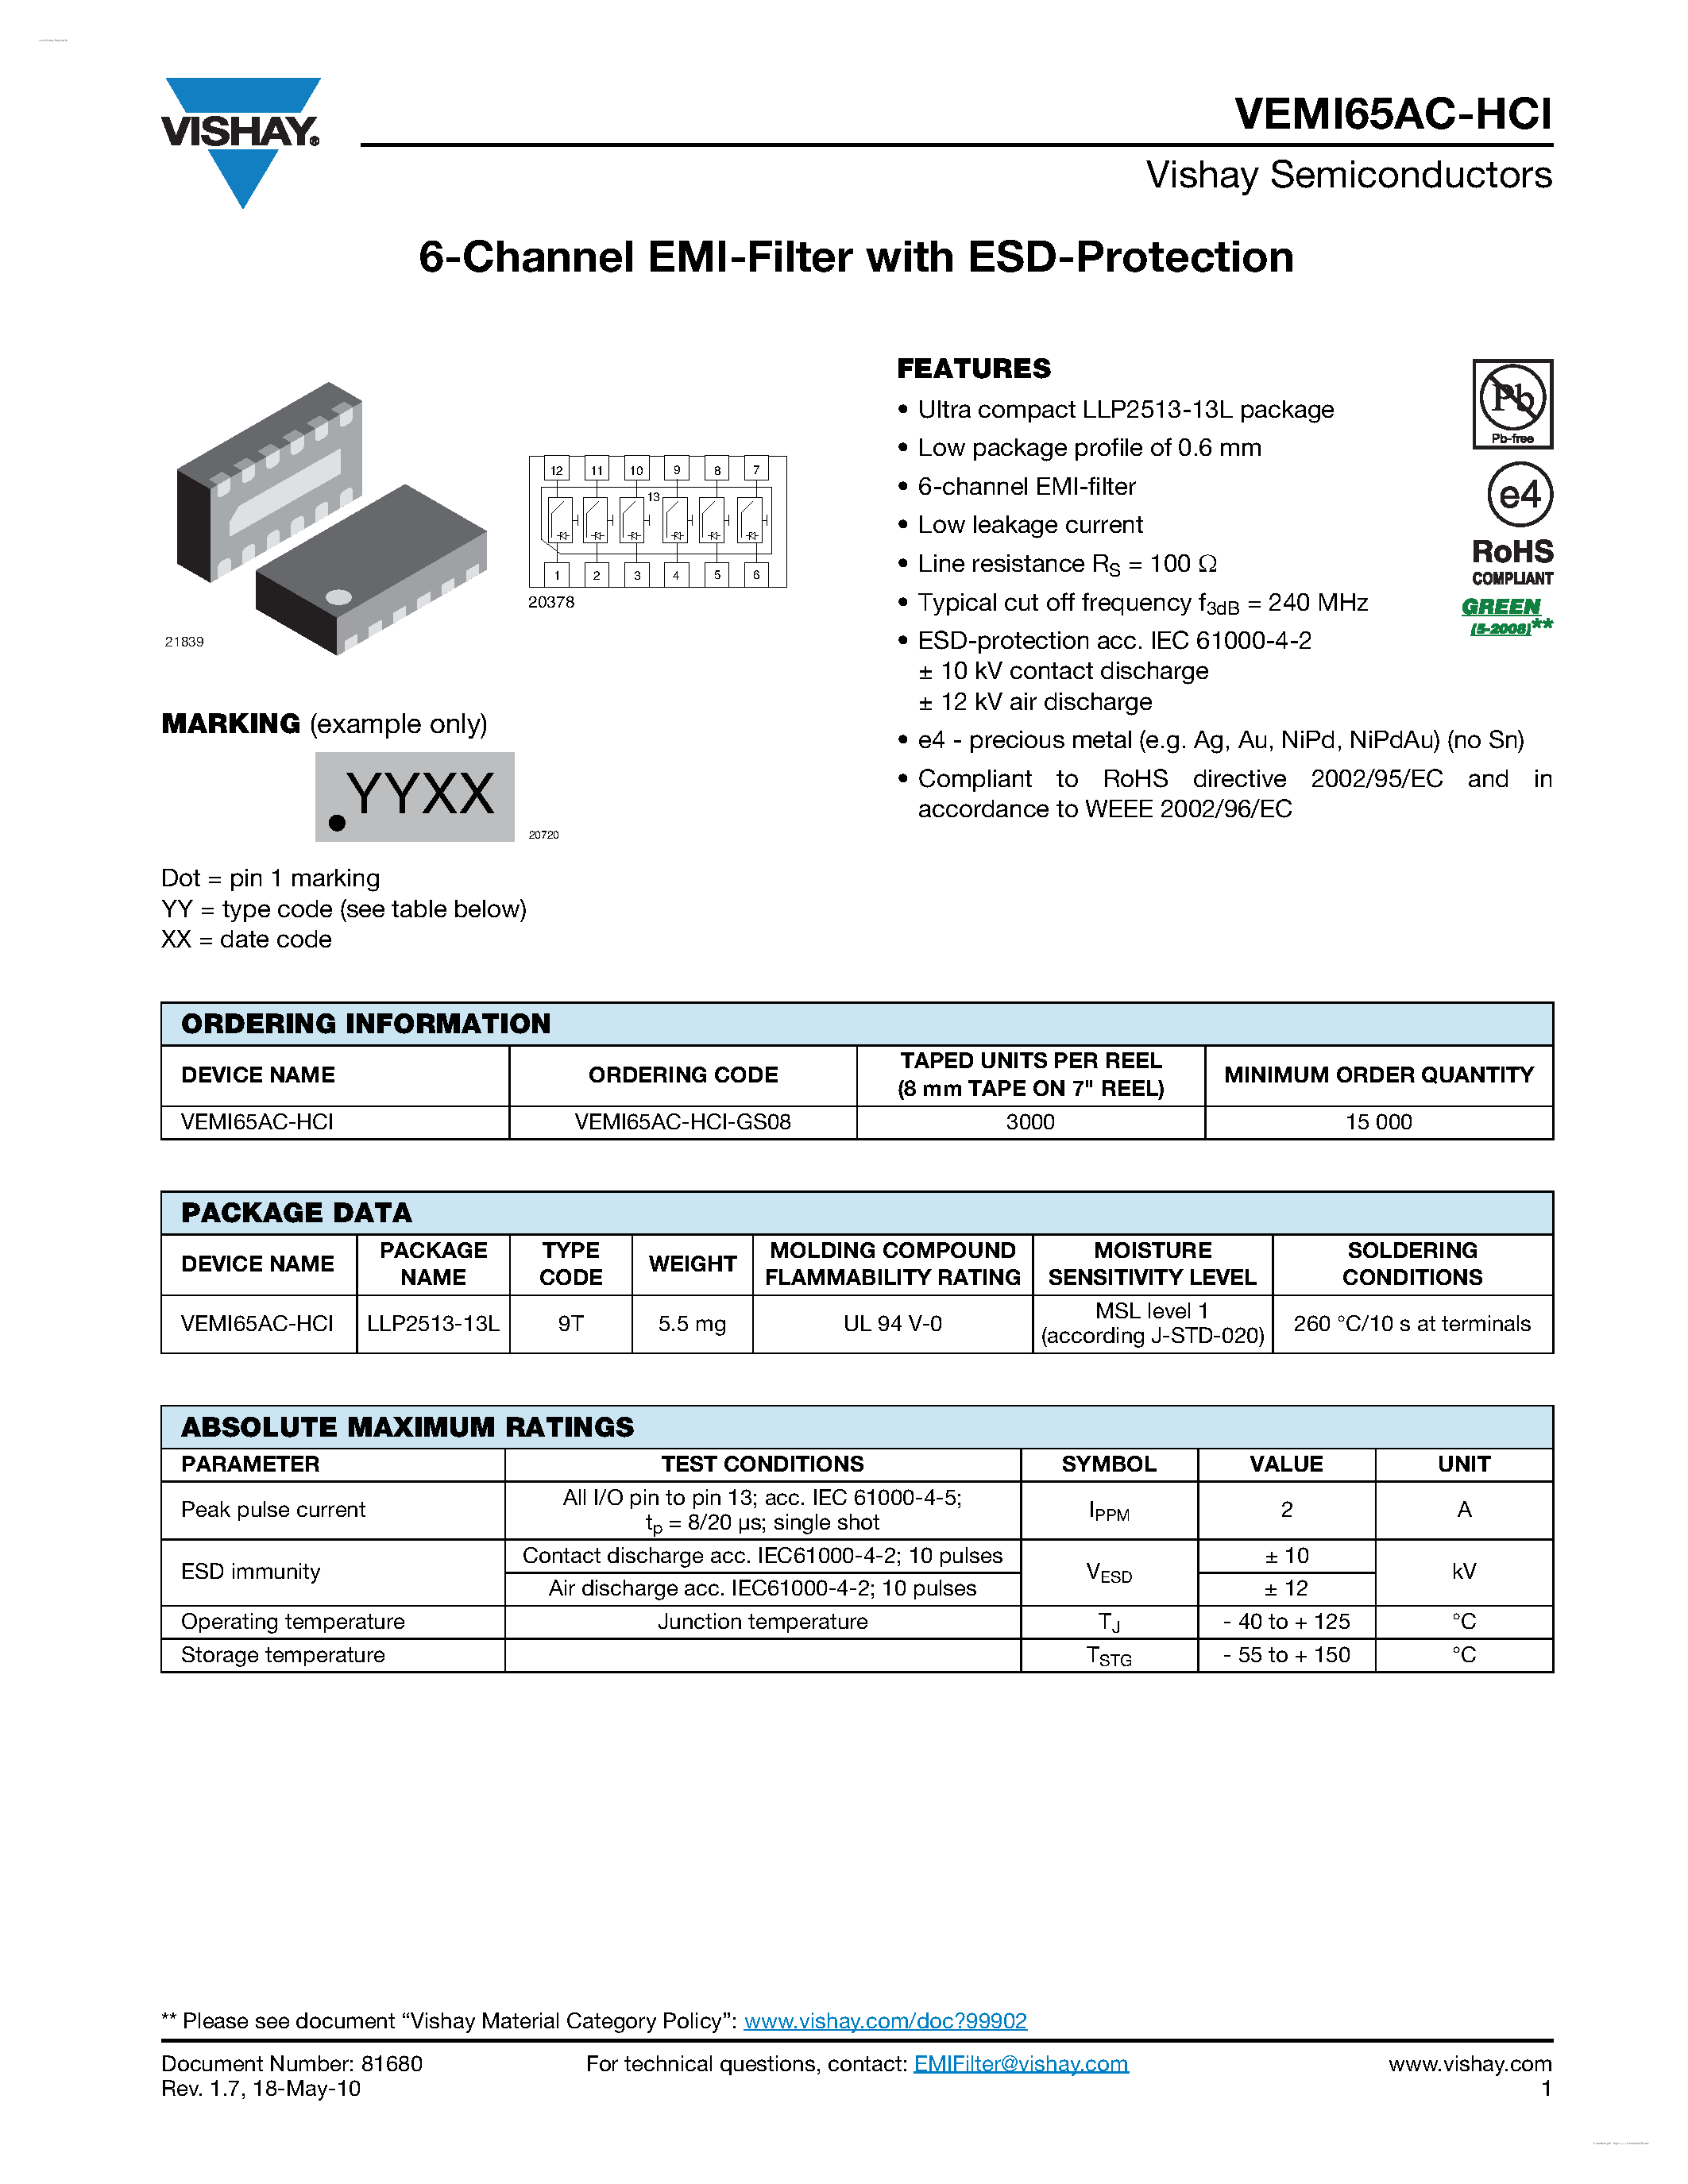 Даташит VEMI65AC-HCI - 6-Channel EMI-Filter страница 1